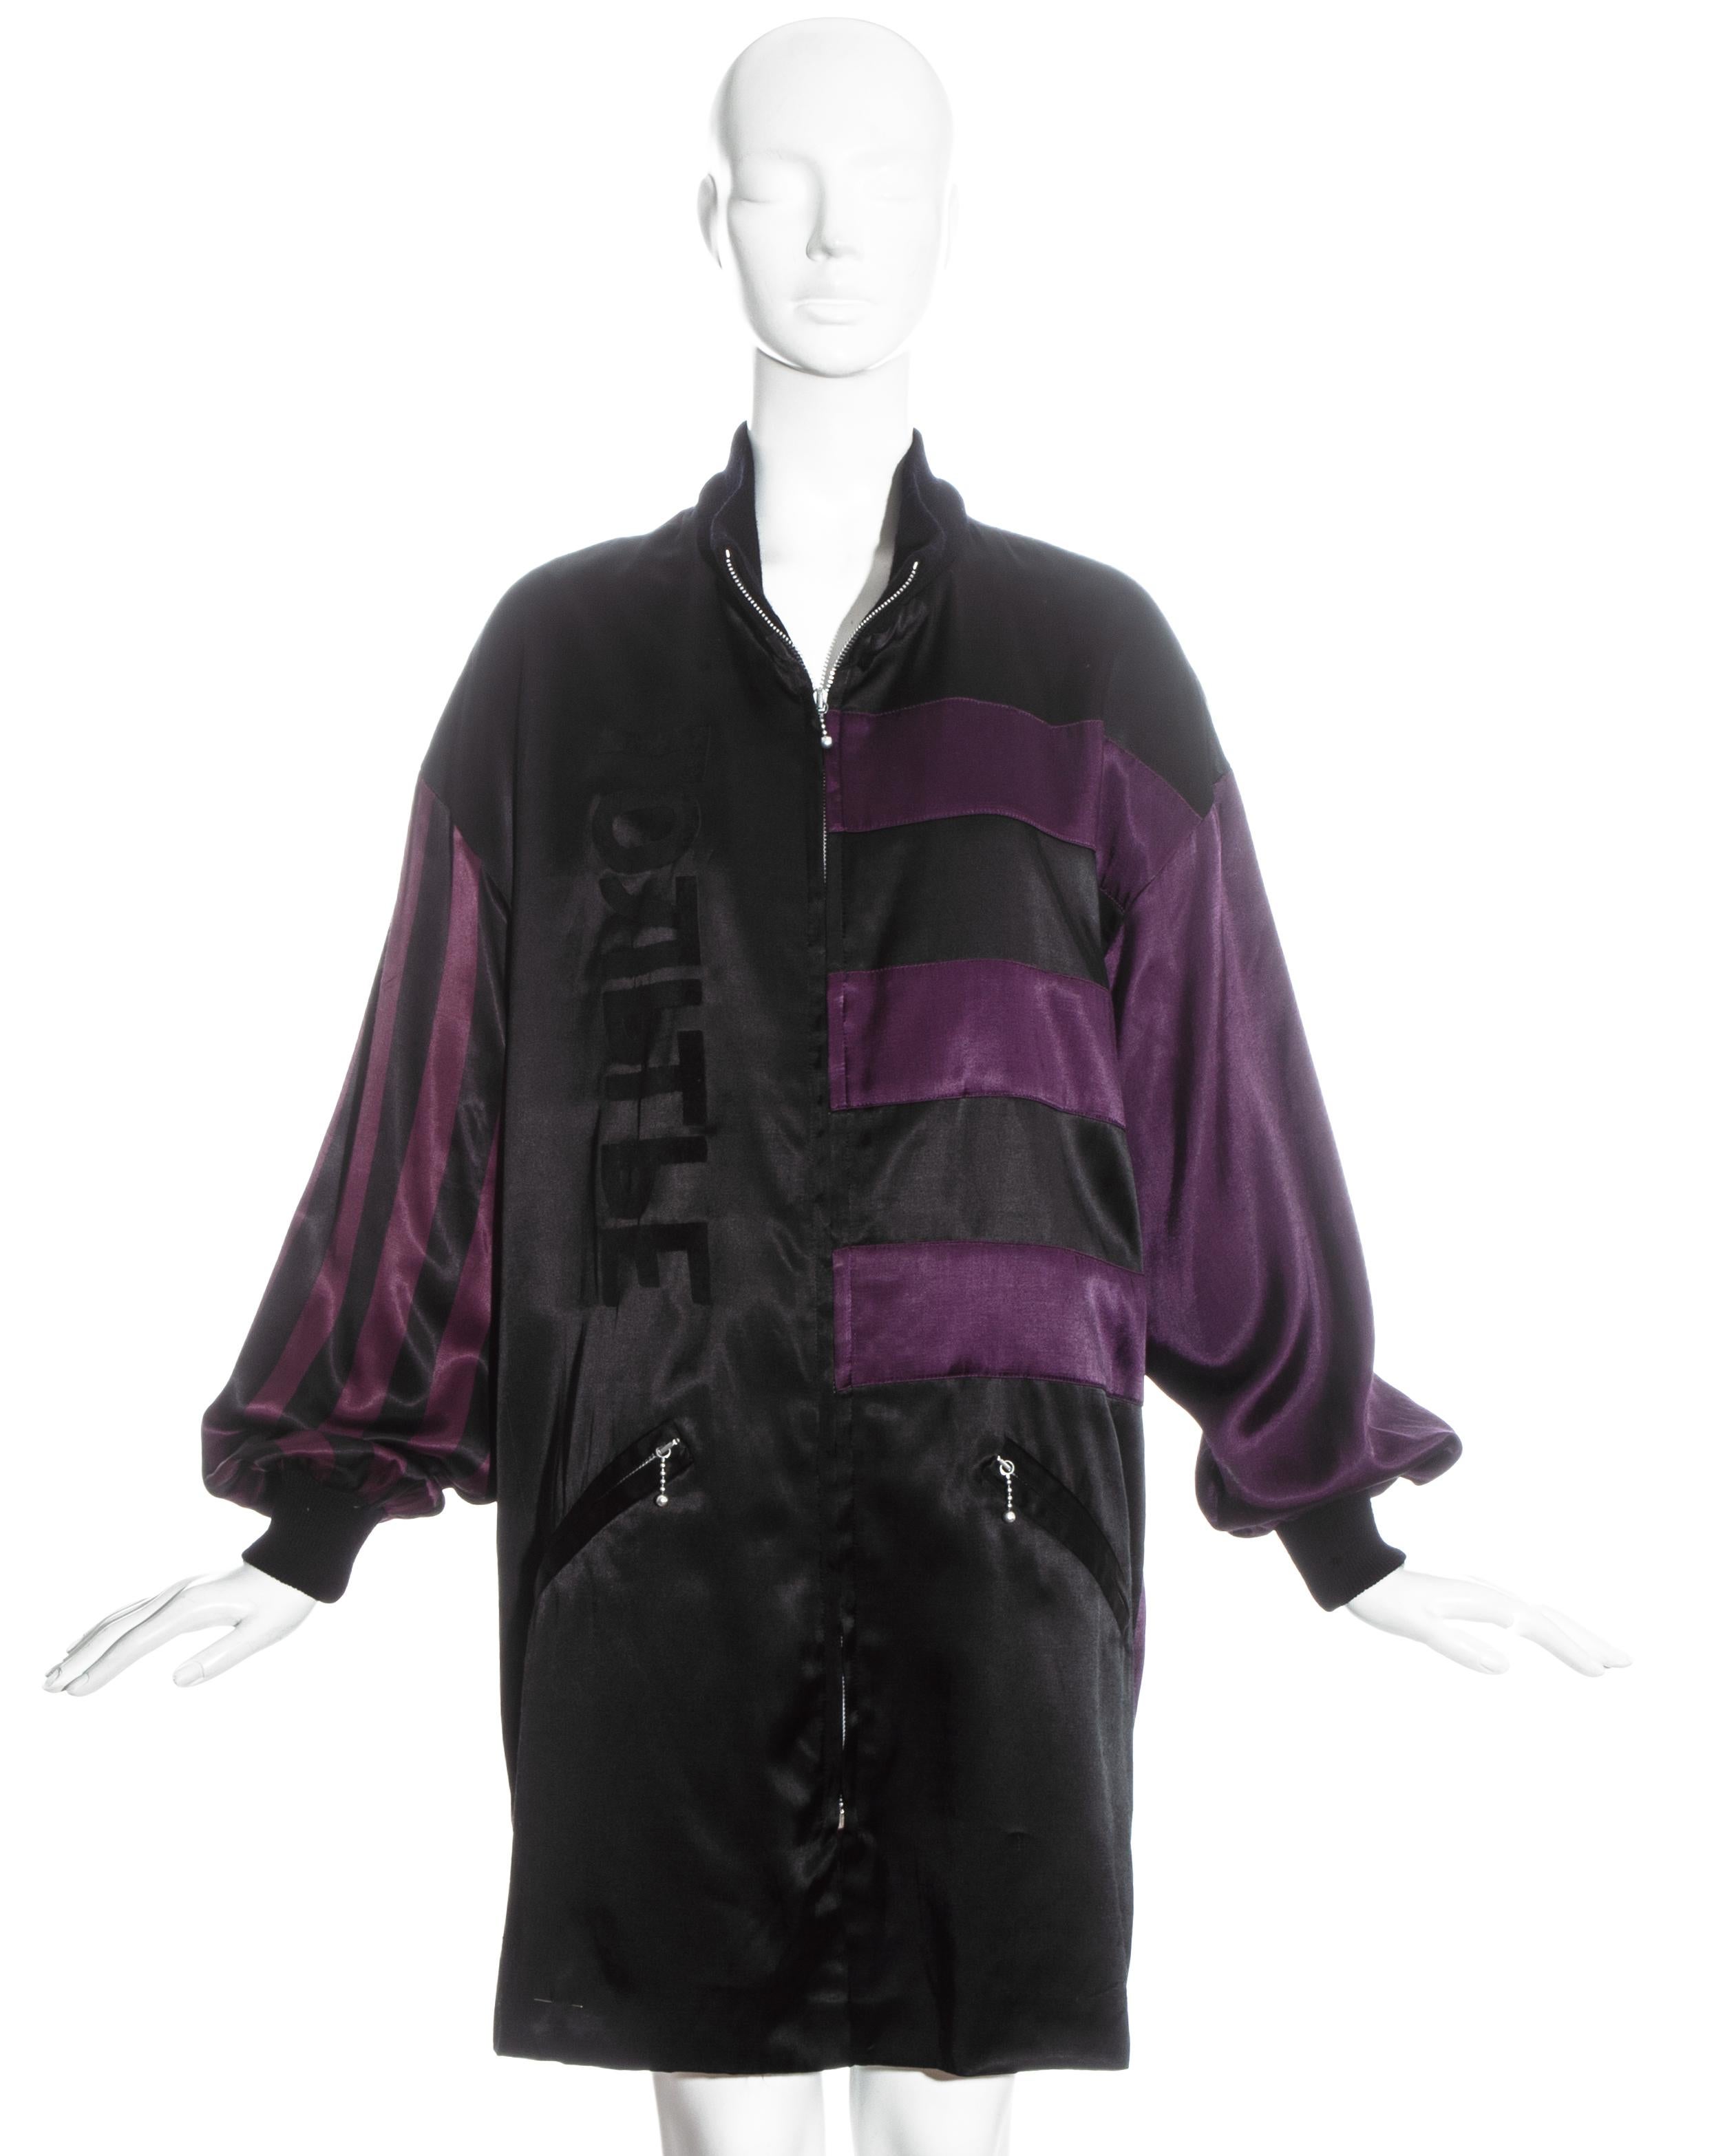 Veste oversize en satin rayé violet et noir Jean Paul Gaultier avec col et poignets en laine côtelée, deux poches avant et fermeture éclair.

Automne-Hiver 1986